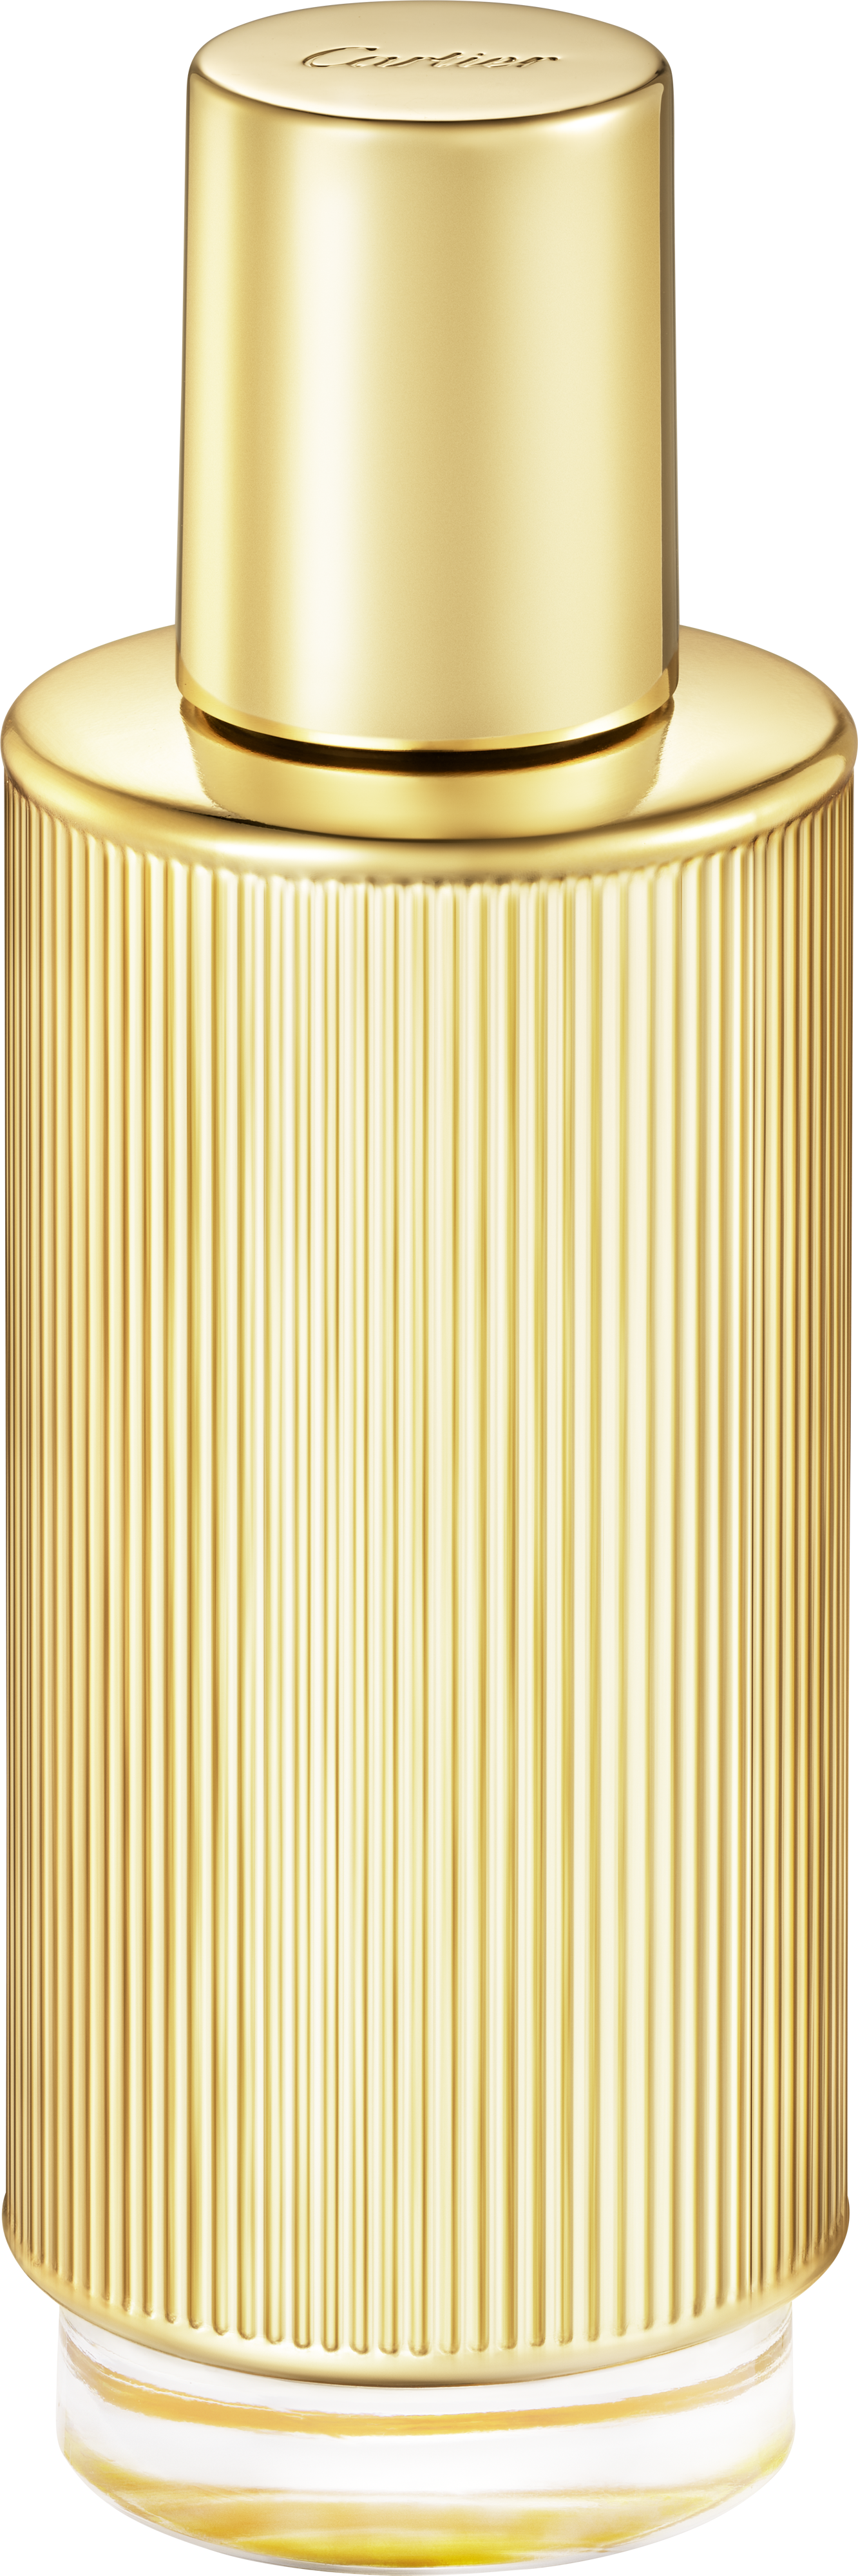 Les Bases à Parfumer Cartier - Huile Pure100 ML